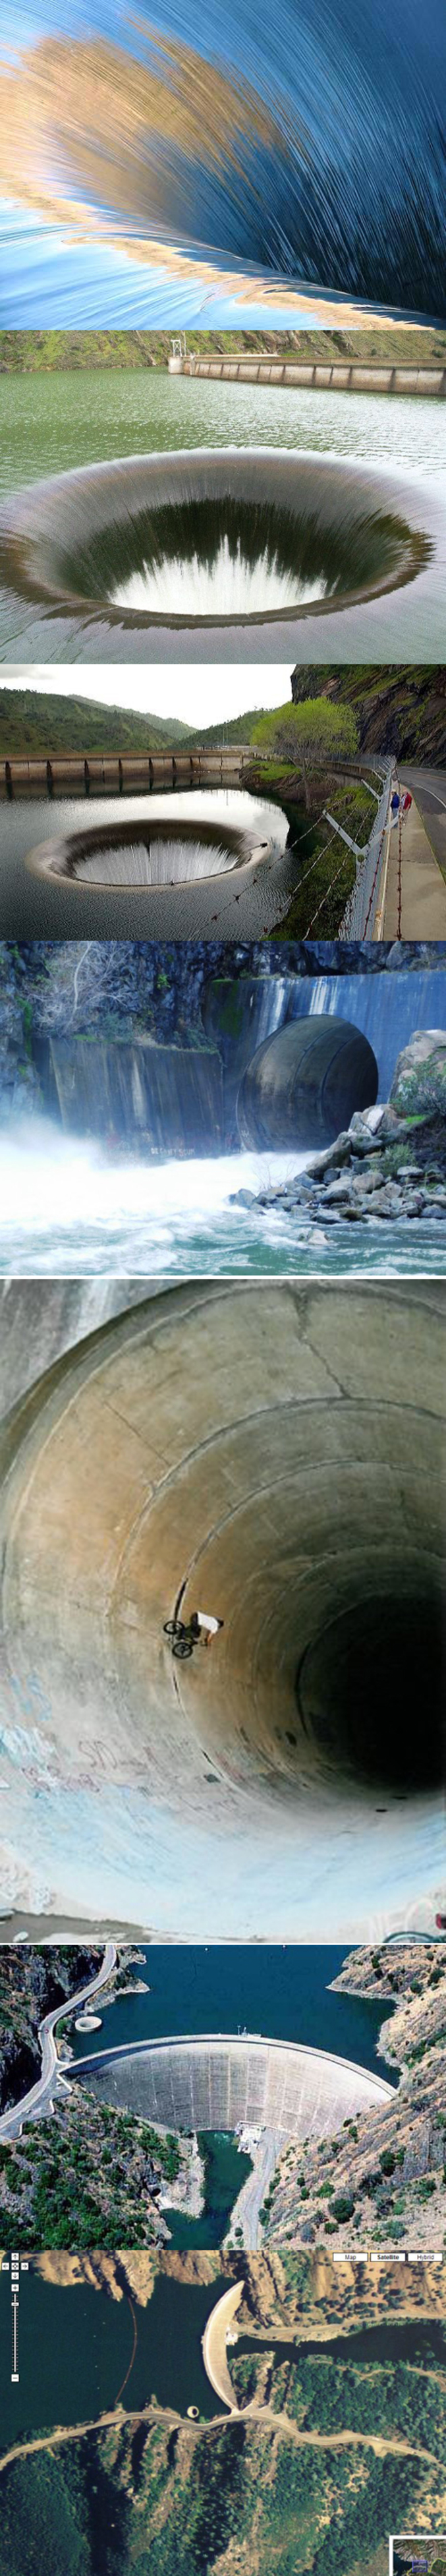 Le barrage de Monticello Dam et son "glory hole".